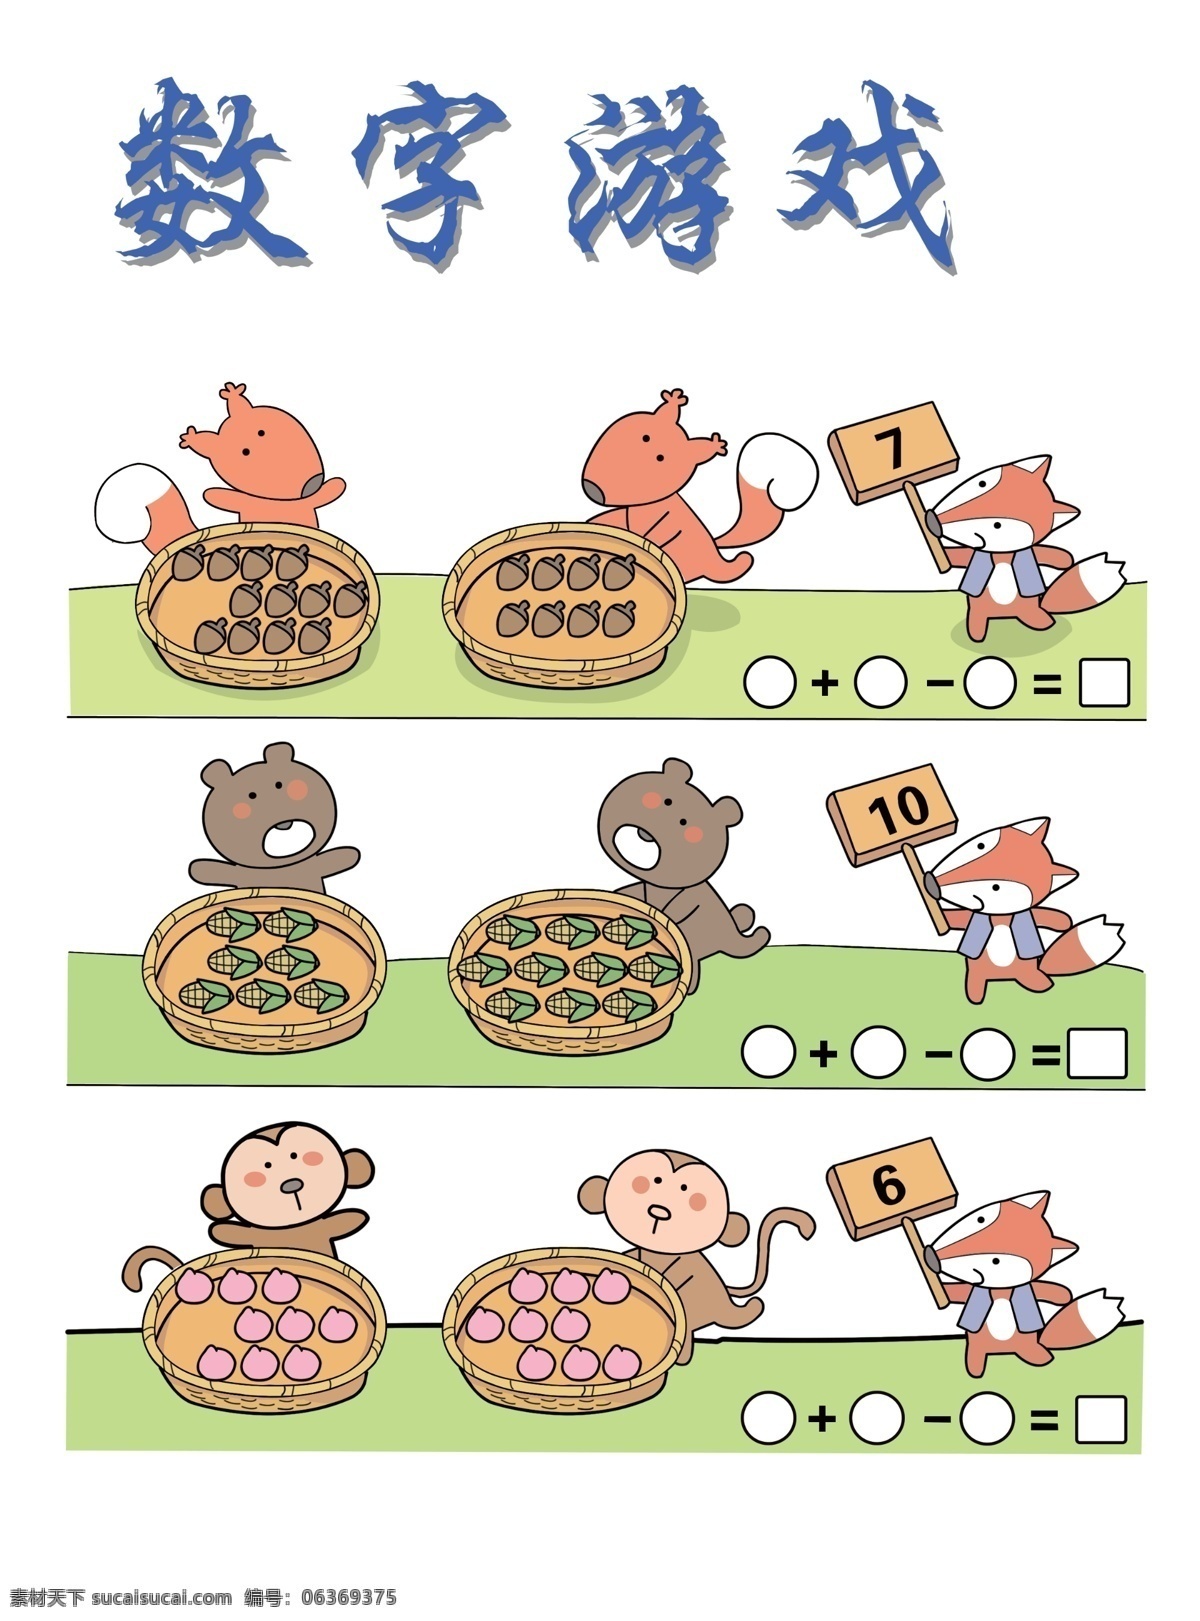 数字游戏 数字 游戏 幼儿 老鼠 猴子 卡通 漫画 狐狸 卡通素材 动漫动画